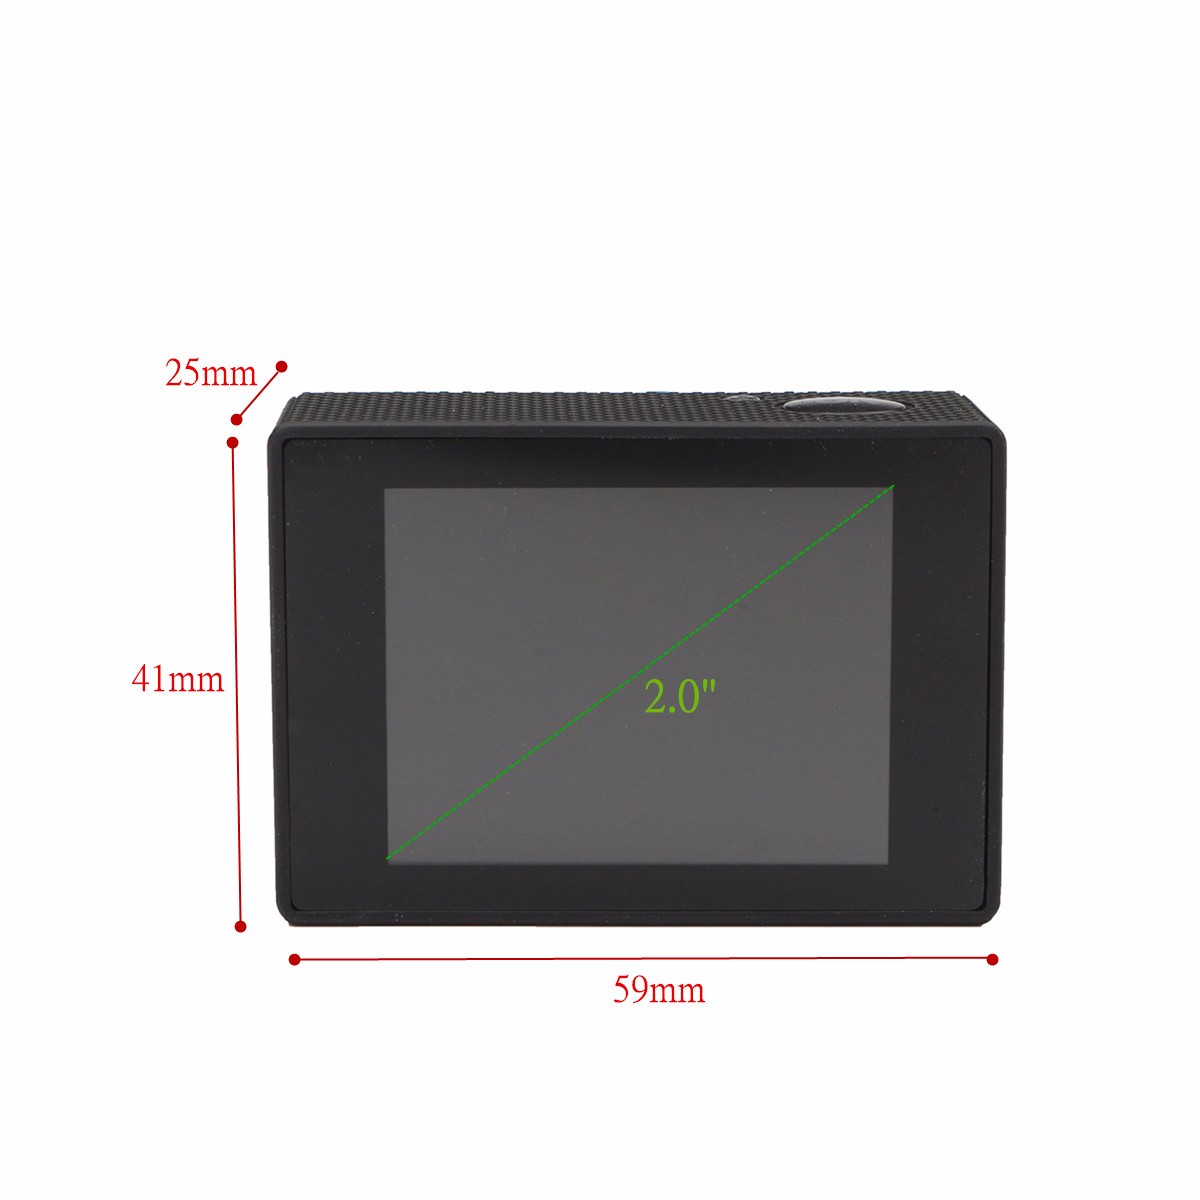 Winksoar-SJ8000-Waterproof-20-Inch-LCD-4K-HD-WiFi-Sports-DV-Action-Camera-with-Remote-Control-1175124